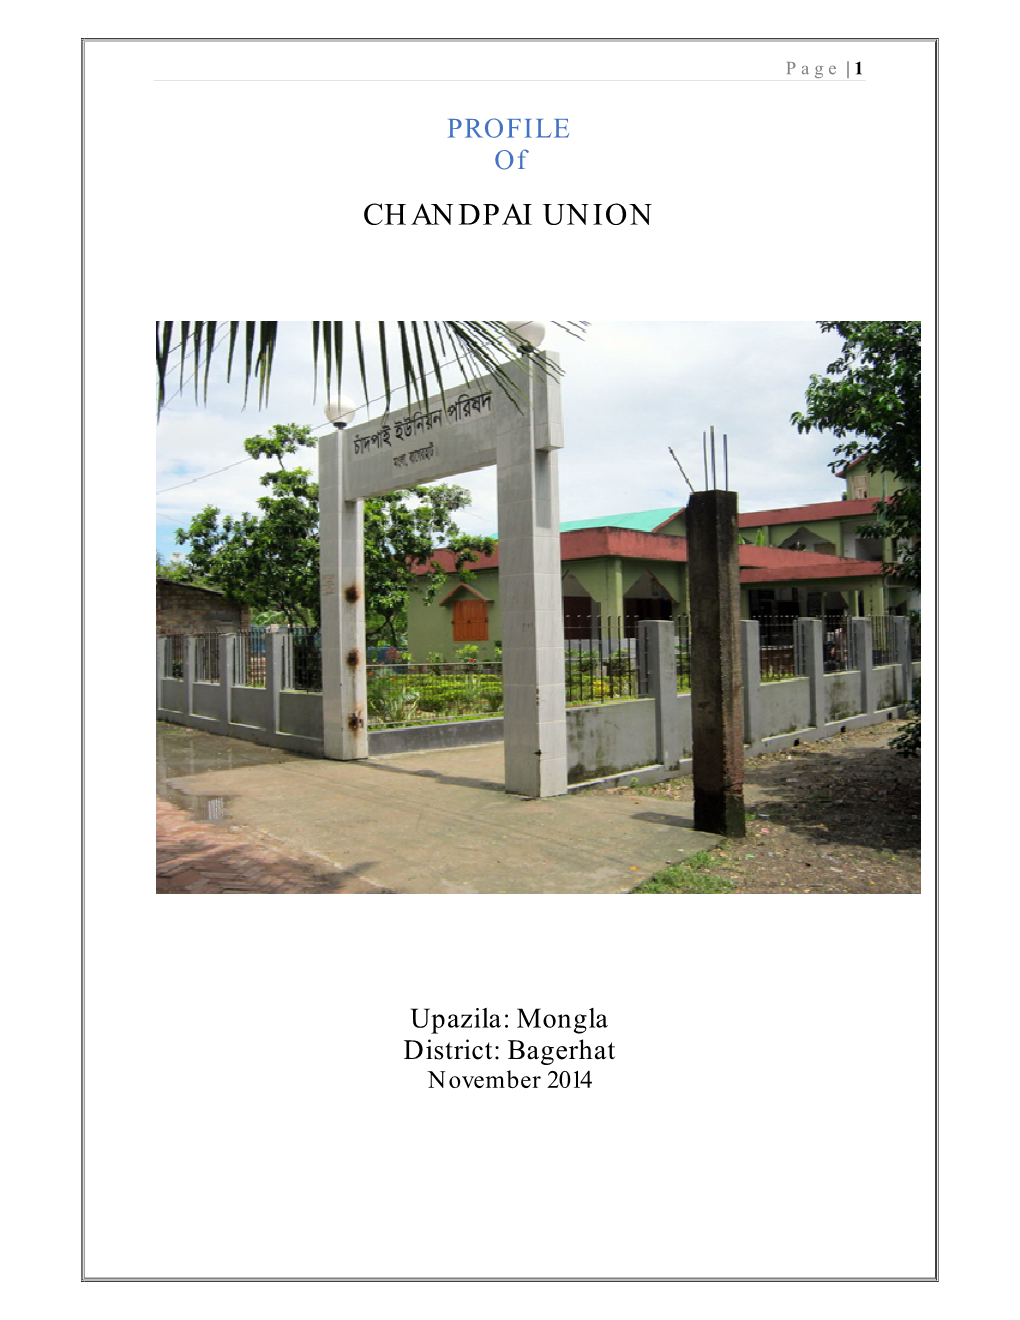 Chandpai Union